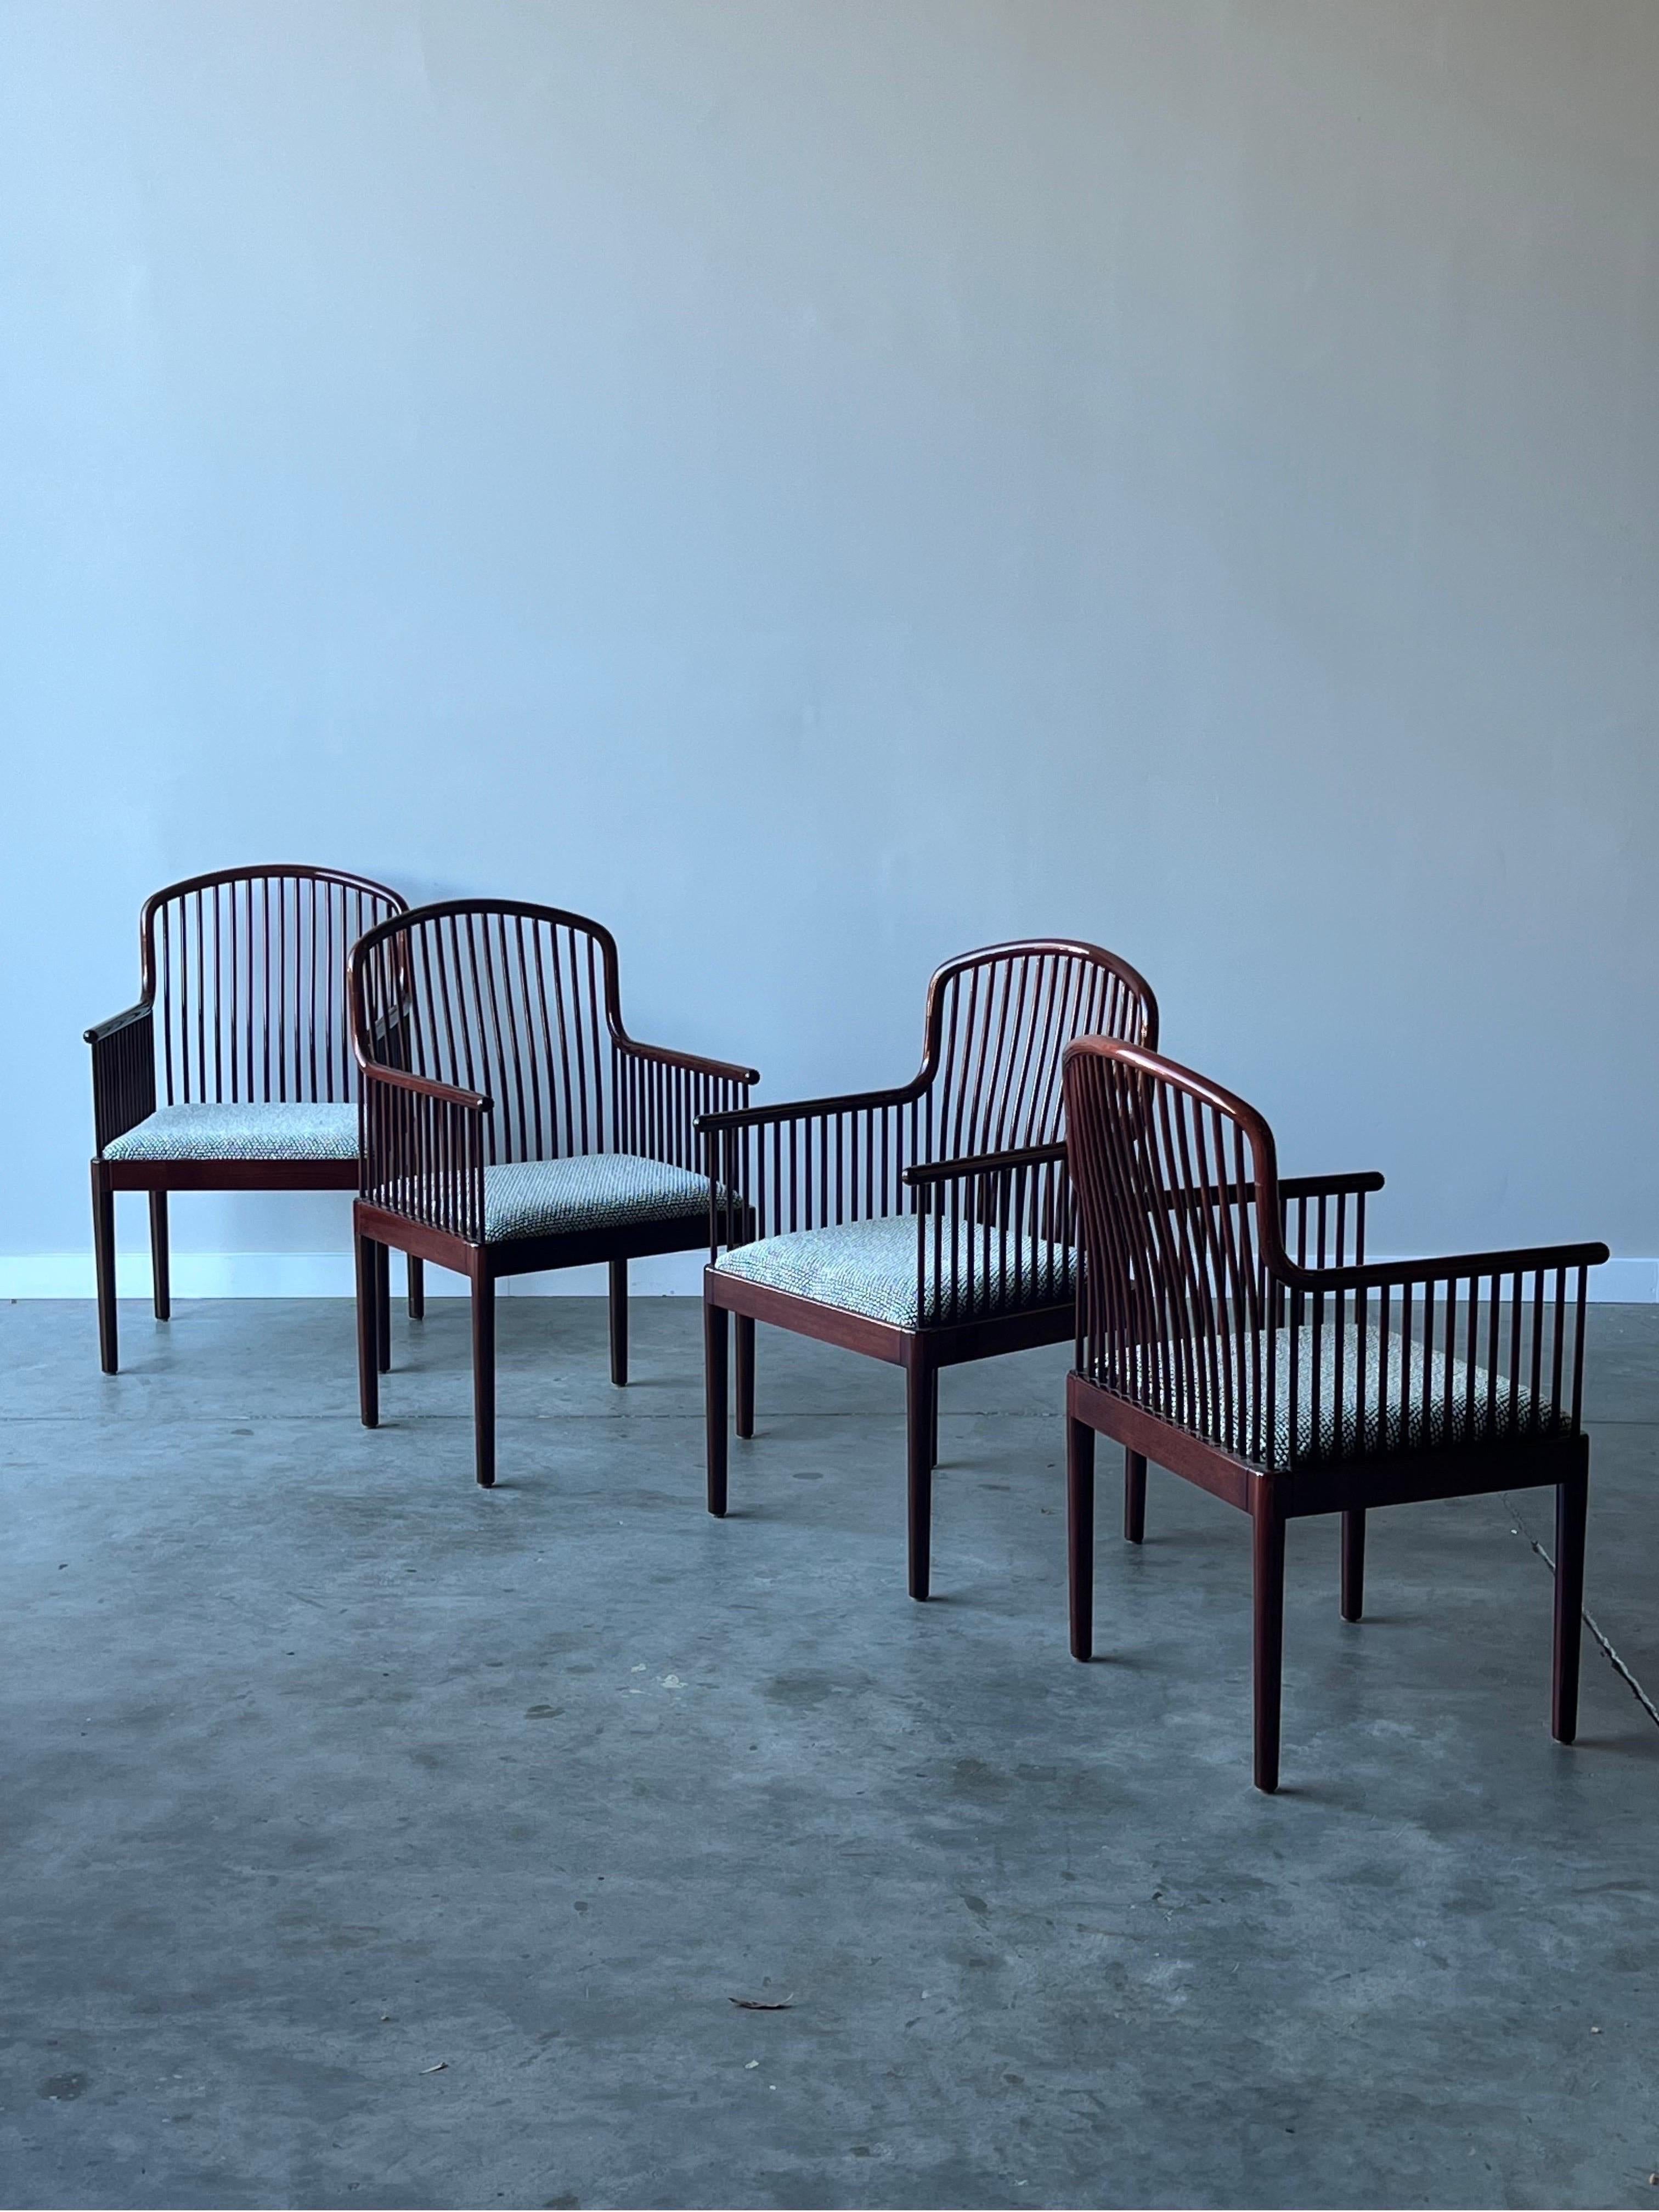 Fauteuils vintage conçus par Davis Allen pour Stendig, vers les années 1980. L'ensemble de quatre fauteuils est fabriqué en bois de rose avec une finition brillante. Les fuseaux s'enroulent le long des accoudoirs et du dossier des chaises, ajoutant